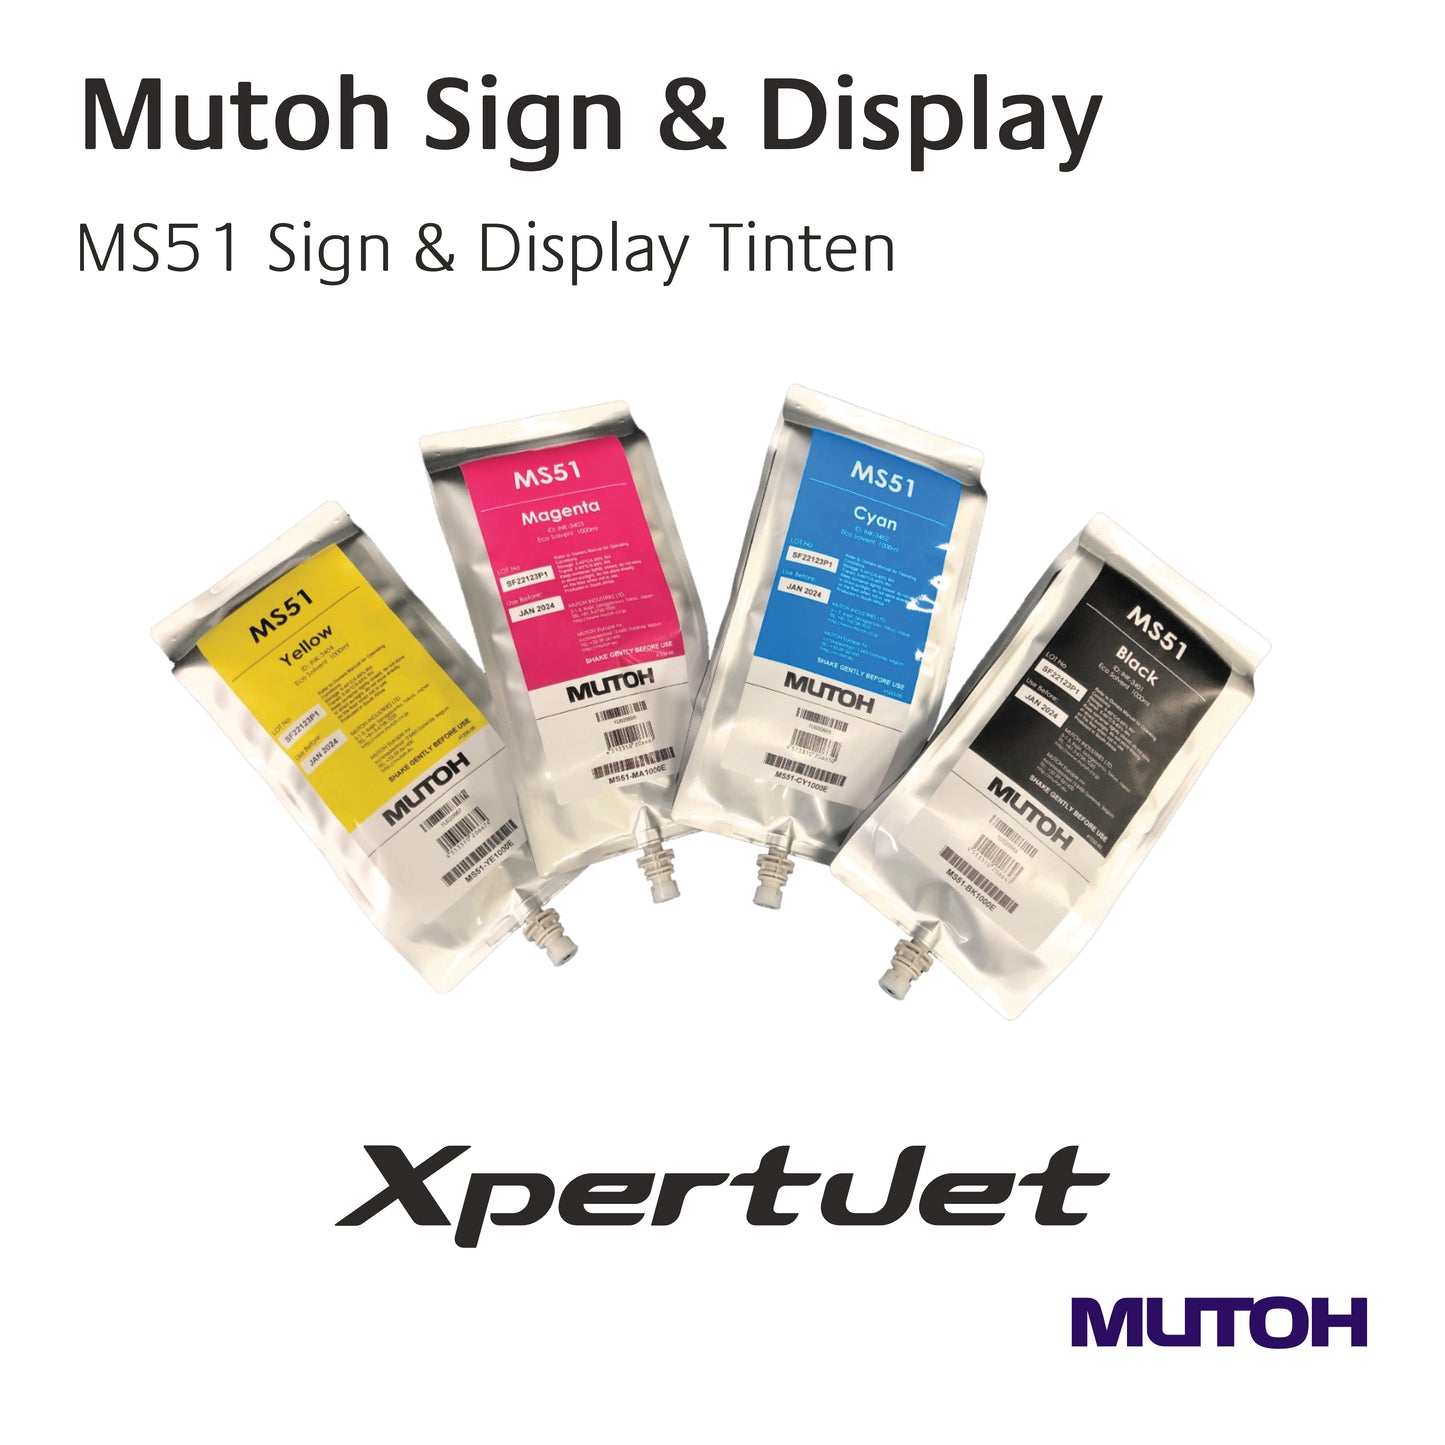 Mutoh - MS51 Sign & Display Tinten